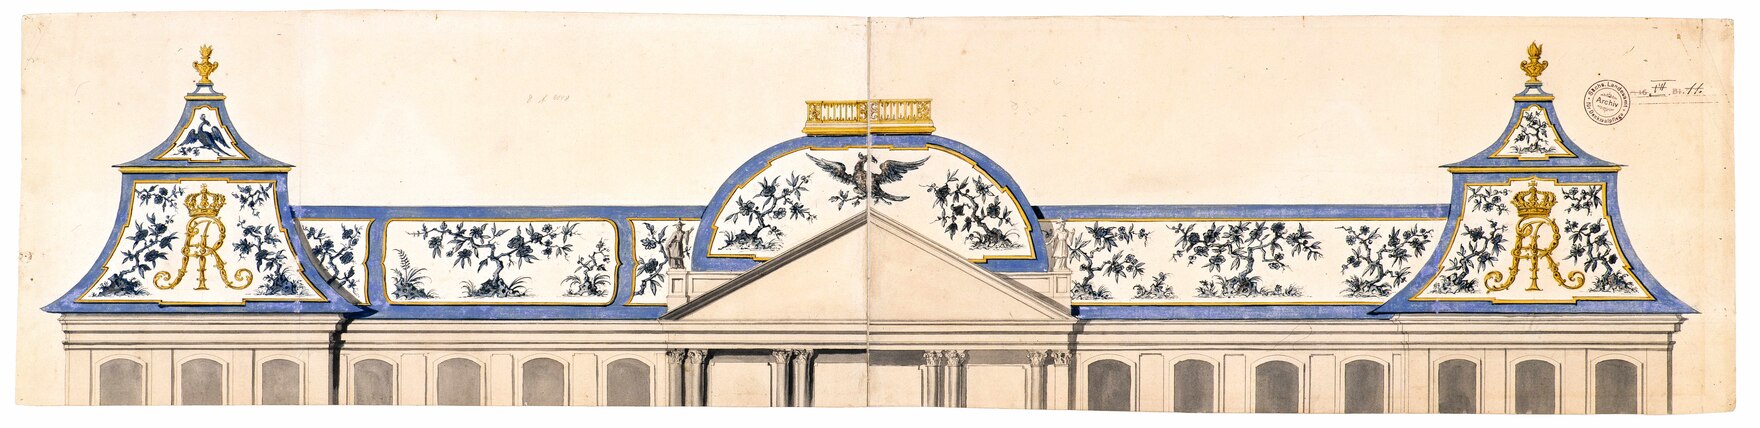 Zeichner im kursächsischen Oberbauamt, Dresden, Japanisches Palais, Dekorationsentwurf für das Dach, wohl 1731